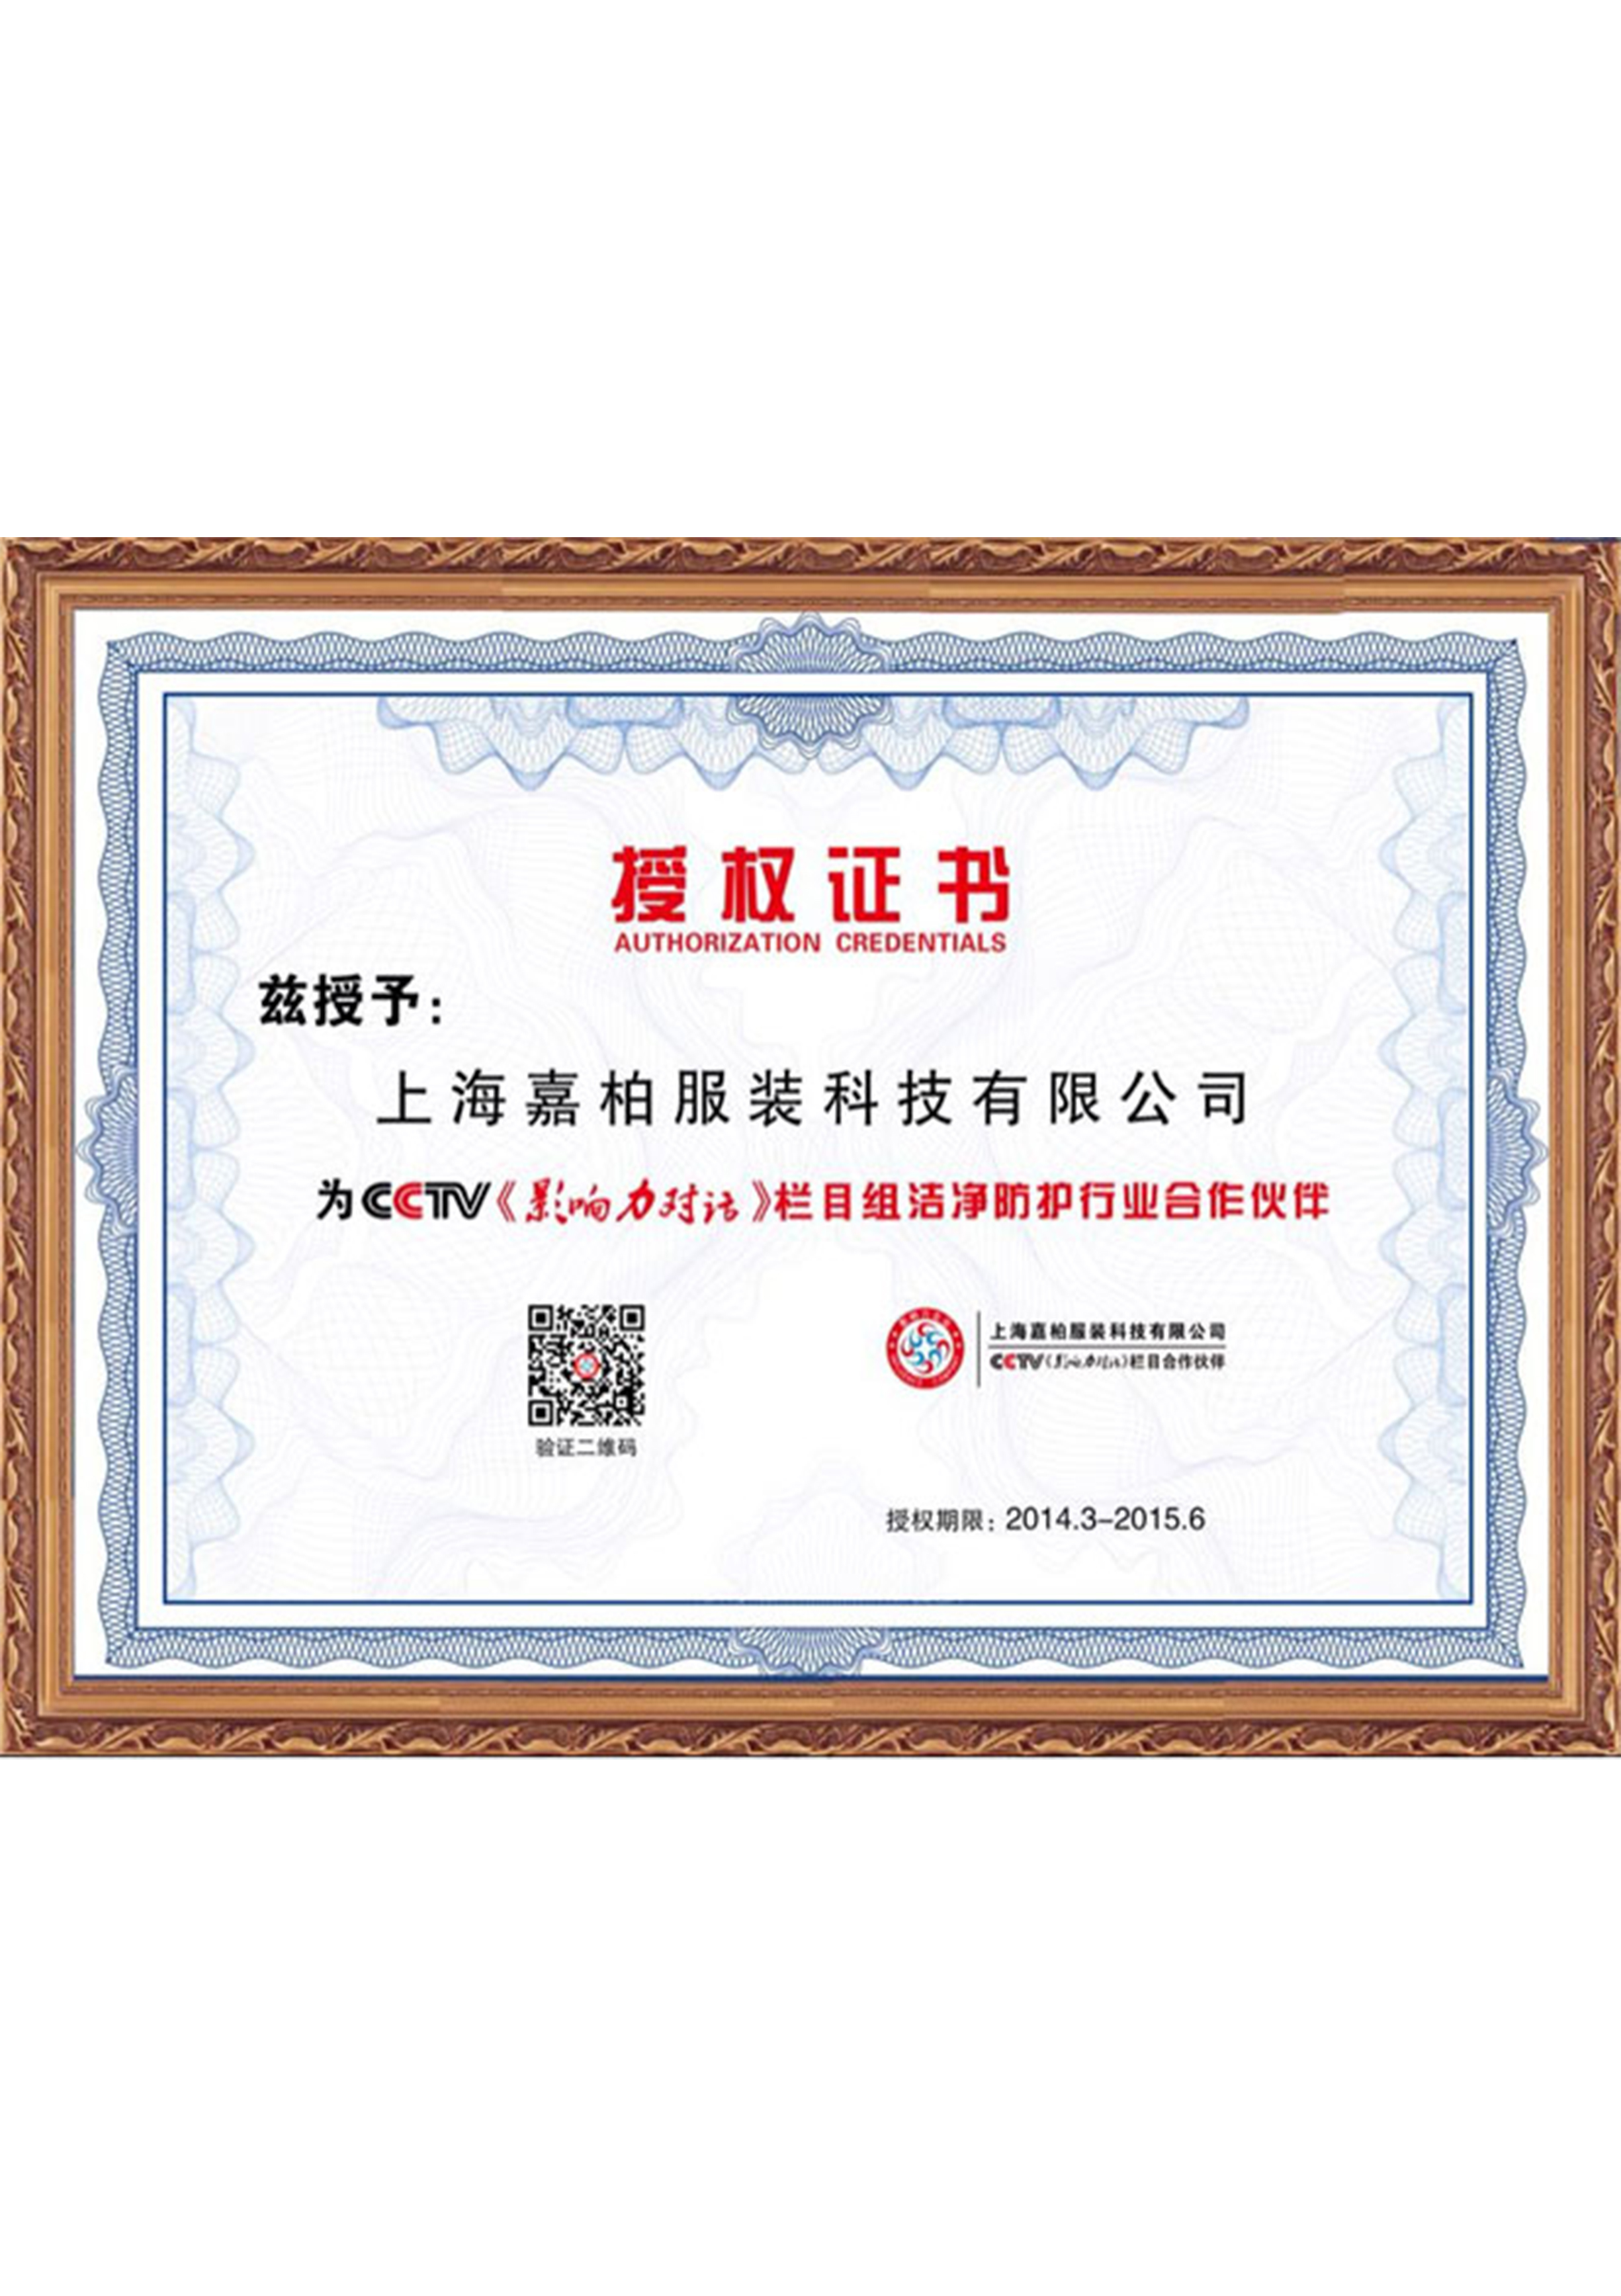 授权证书Certificate of Authorization